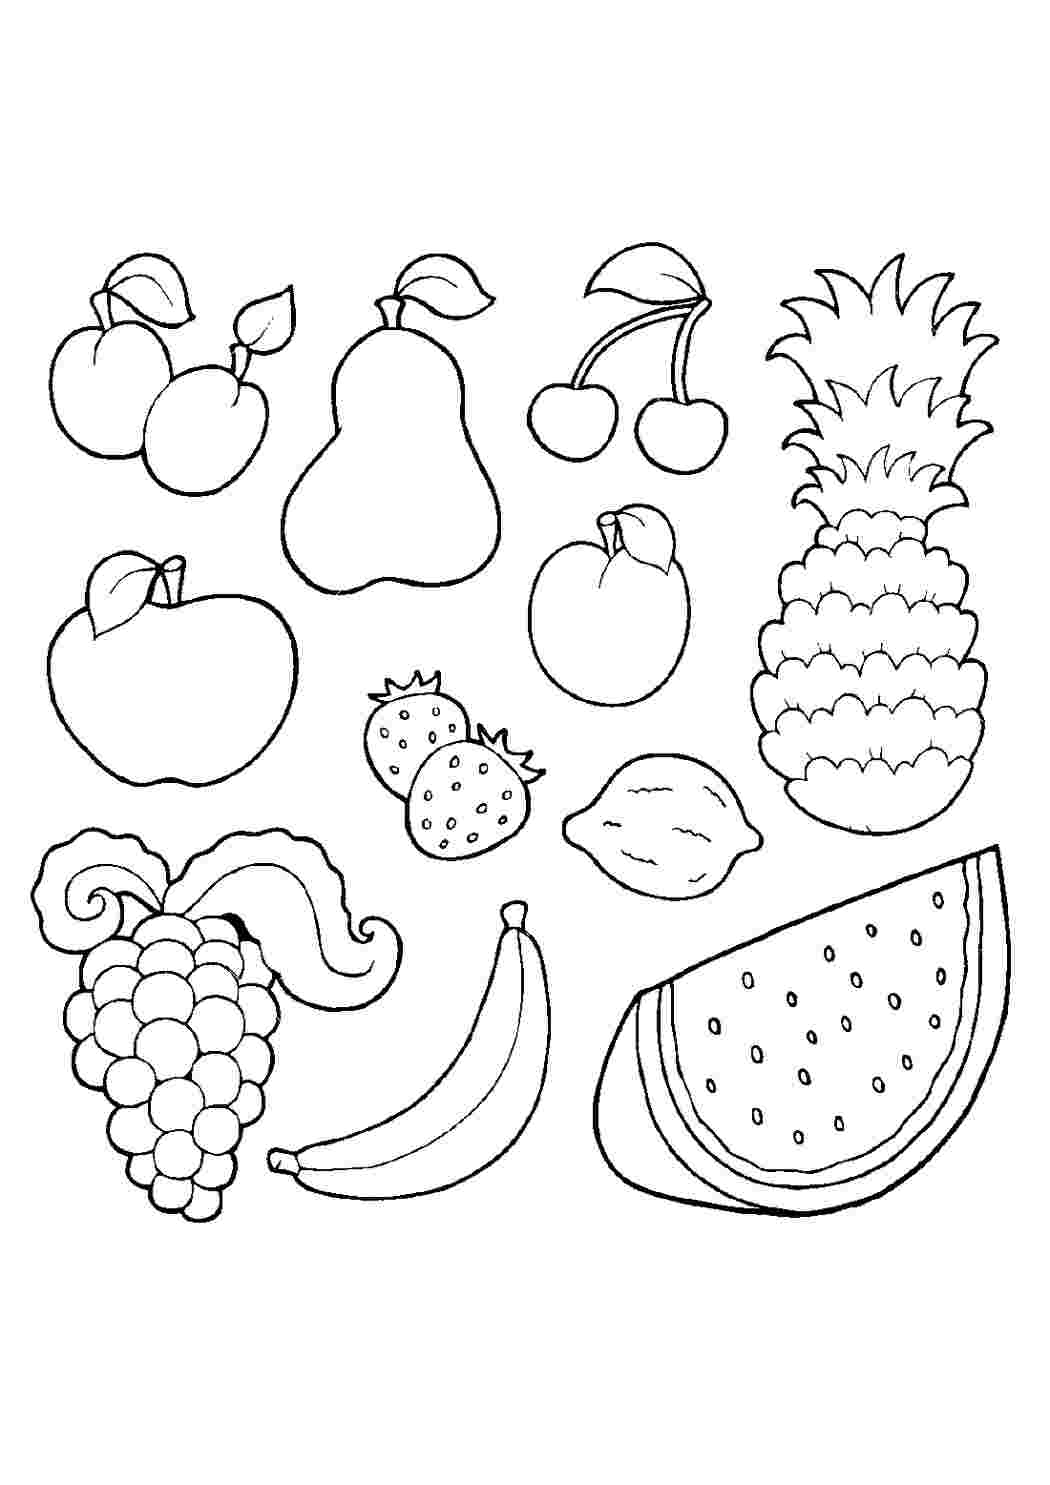 Раскраски фруктов для детей – разукрашиваем с удовольствием